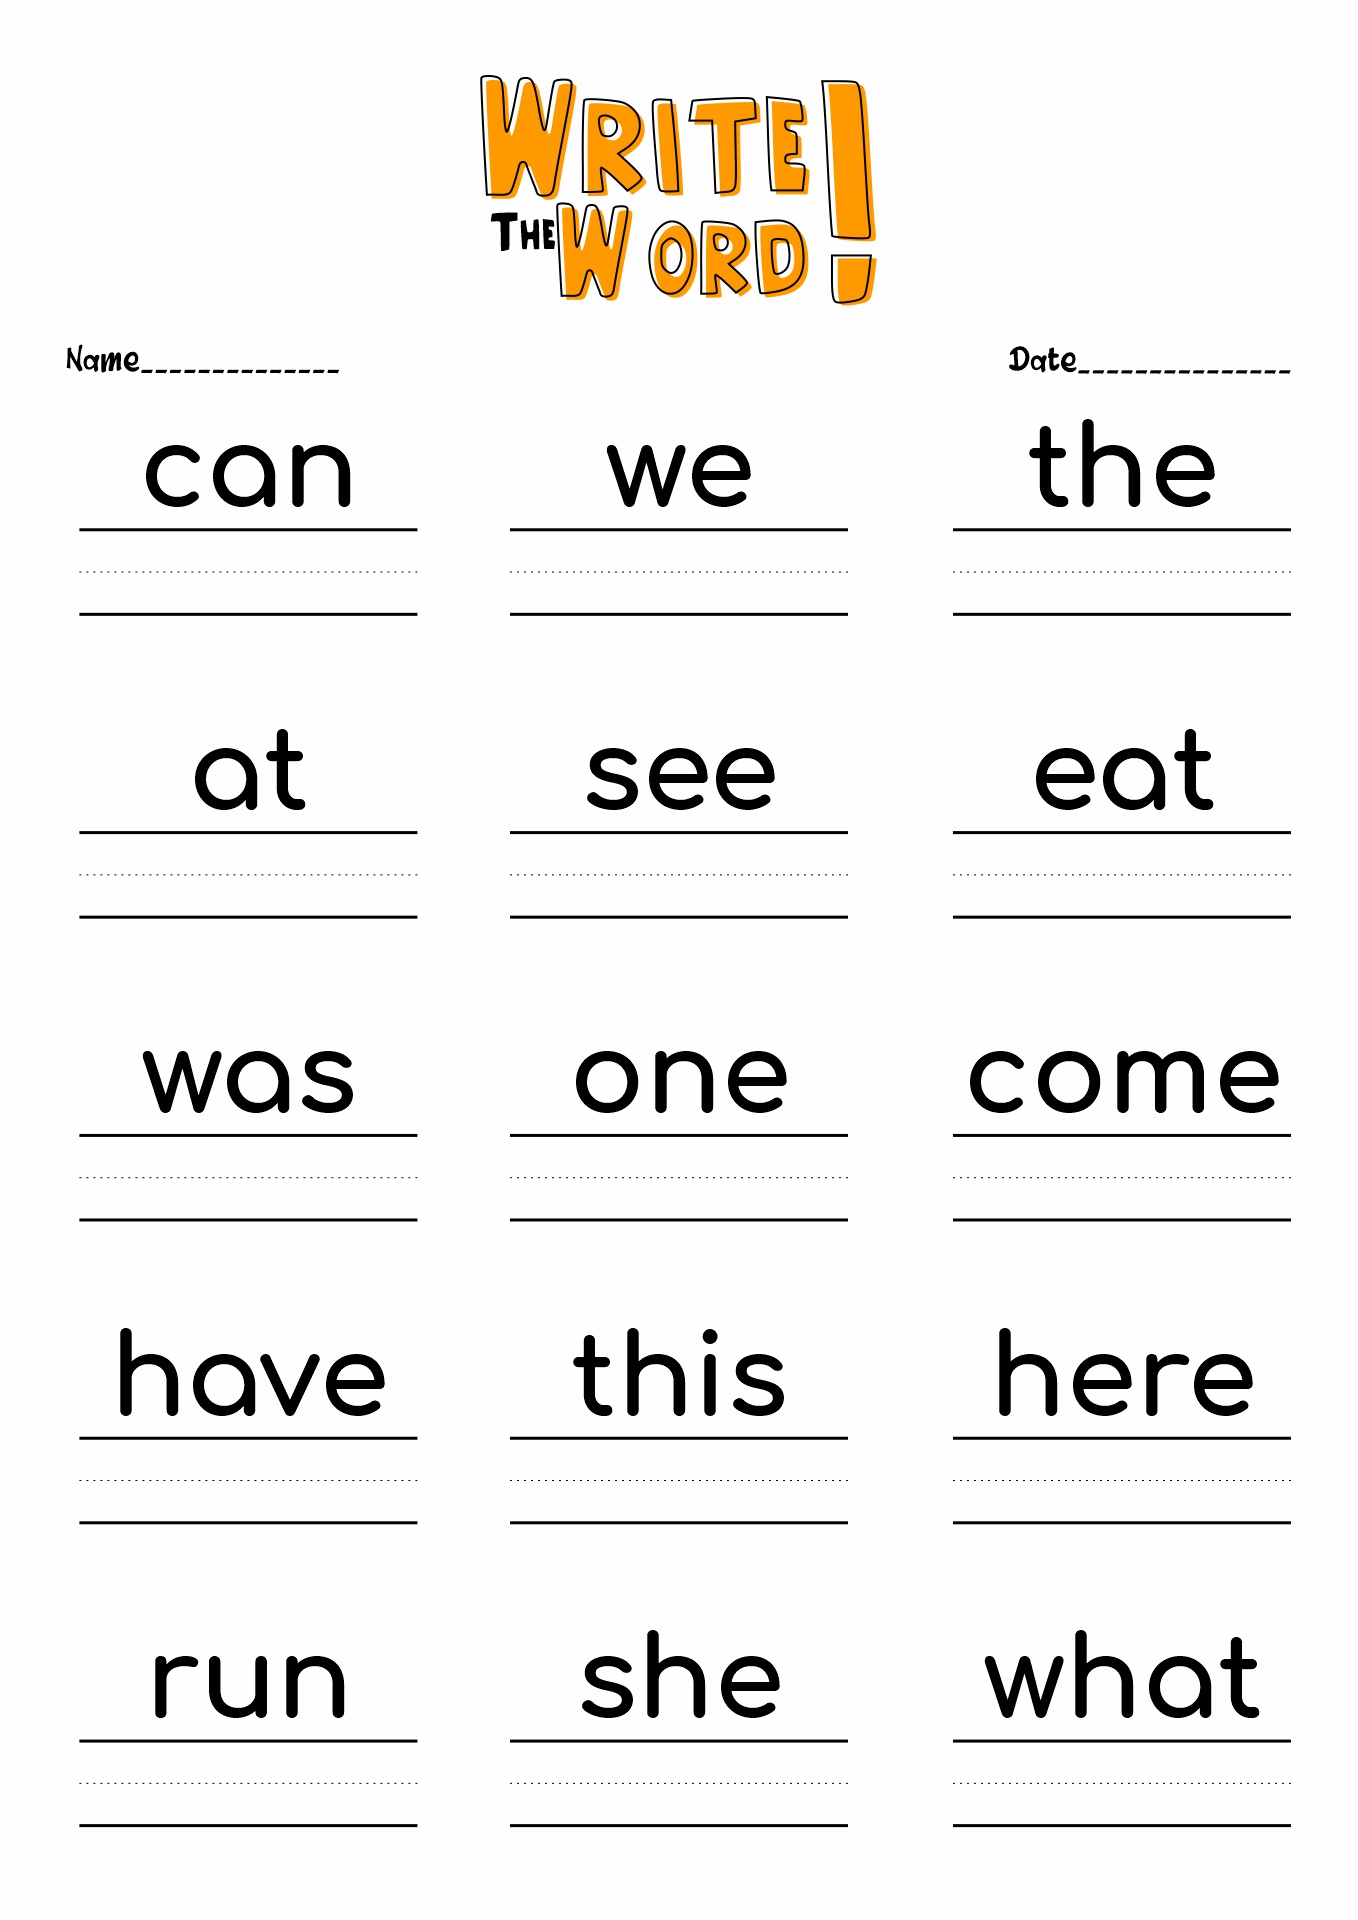 Kindergarten Sight Word Practice Image